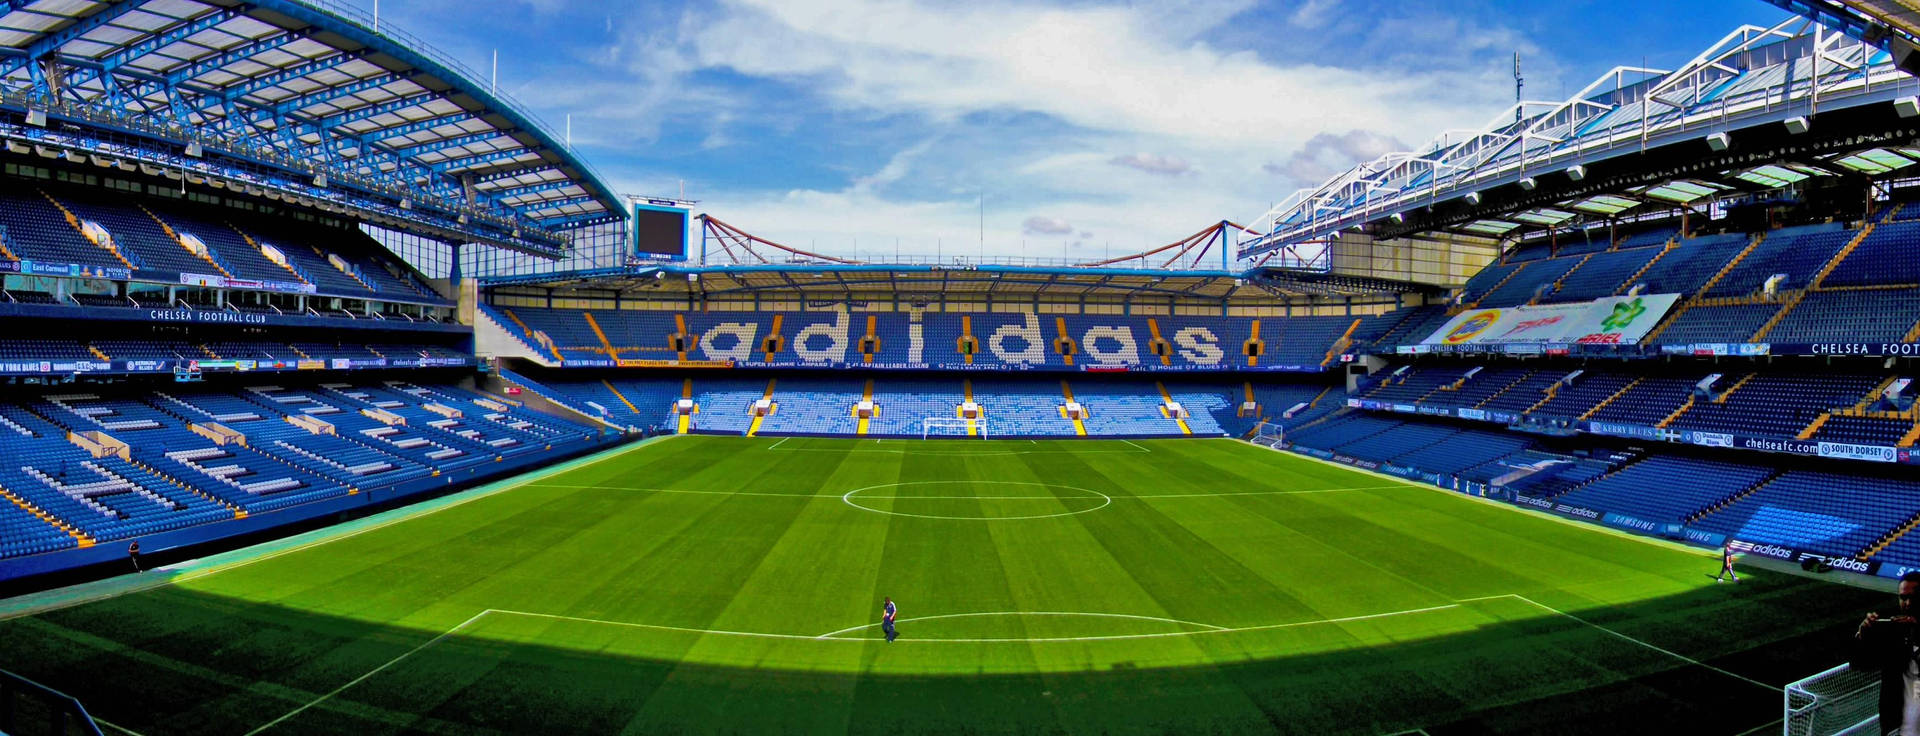 Stamford Bridge Panoramic View Background